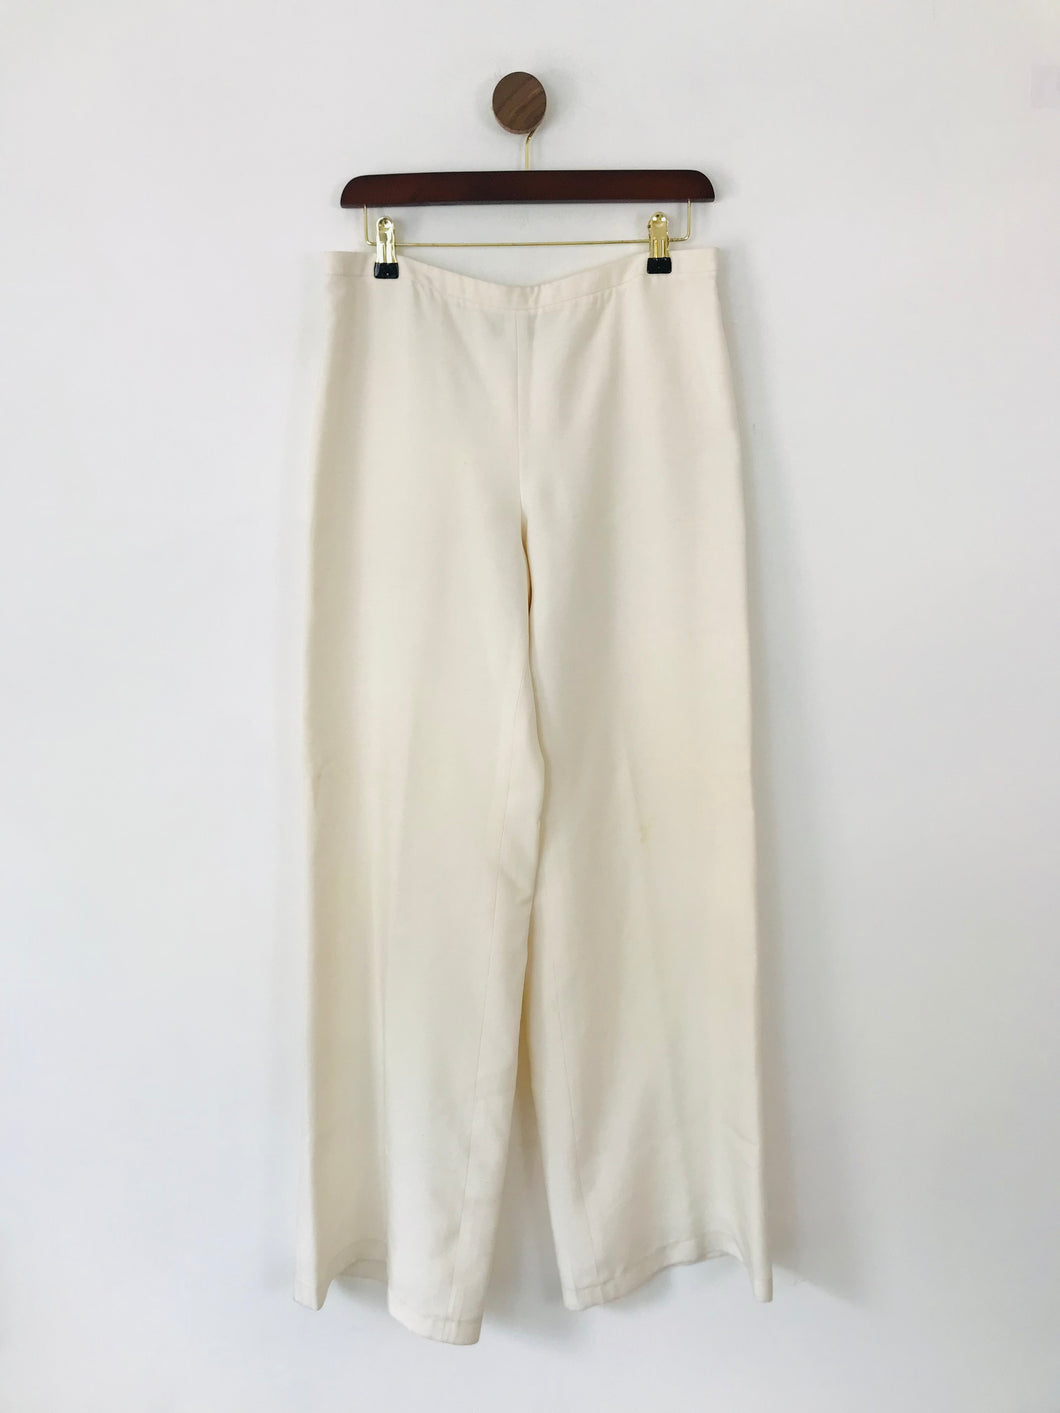 Giorgio Armani Women's Silk Smart Trousers | 42 UK10 | White